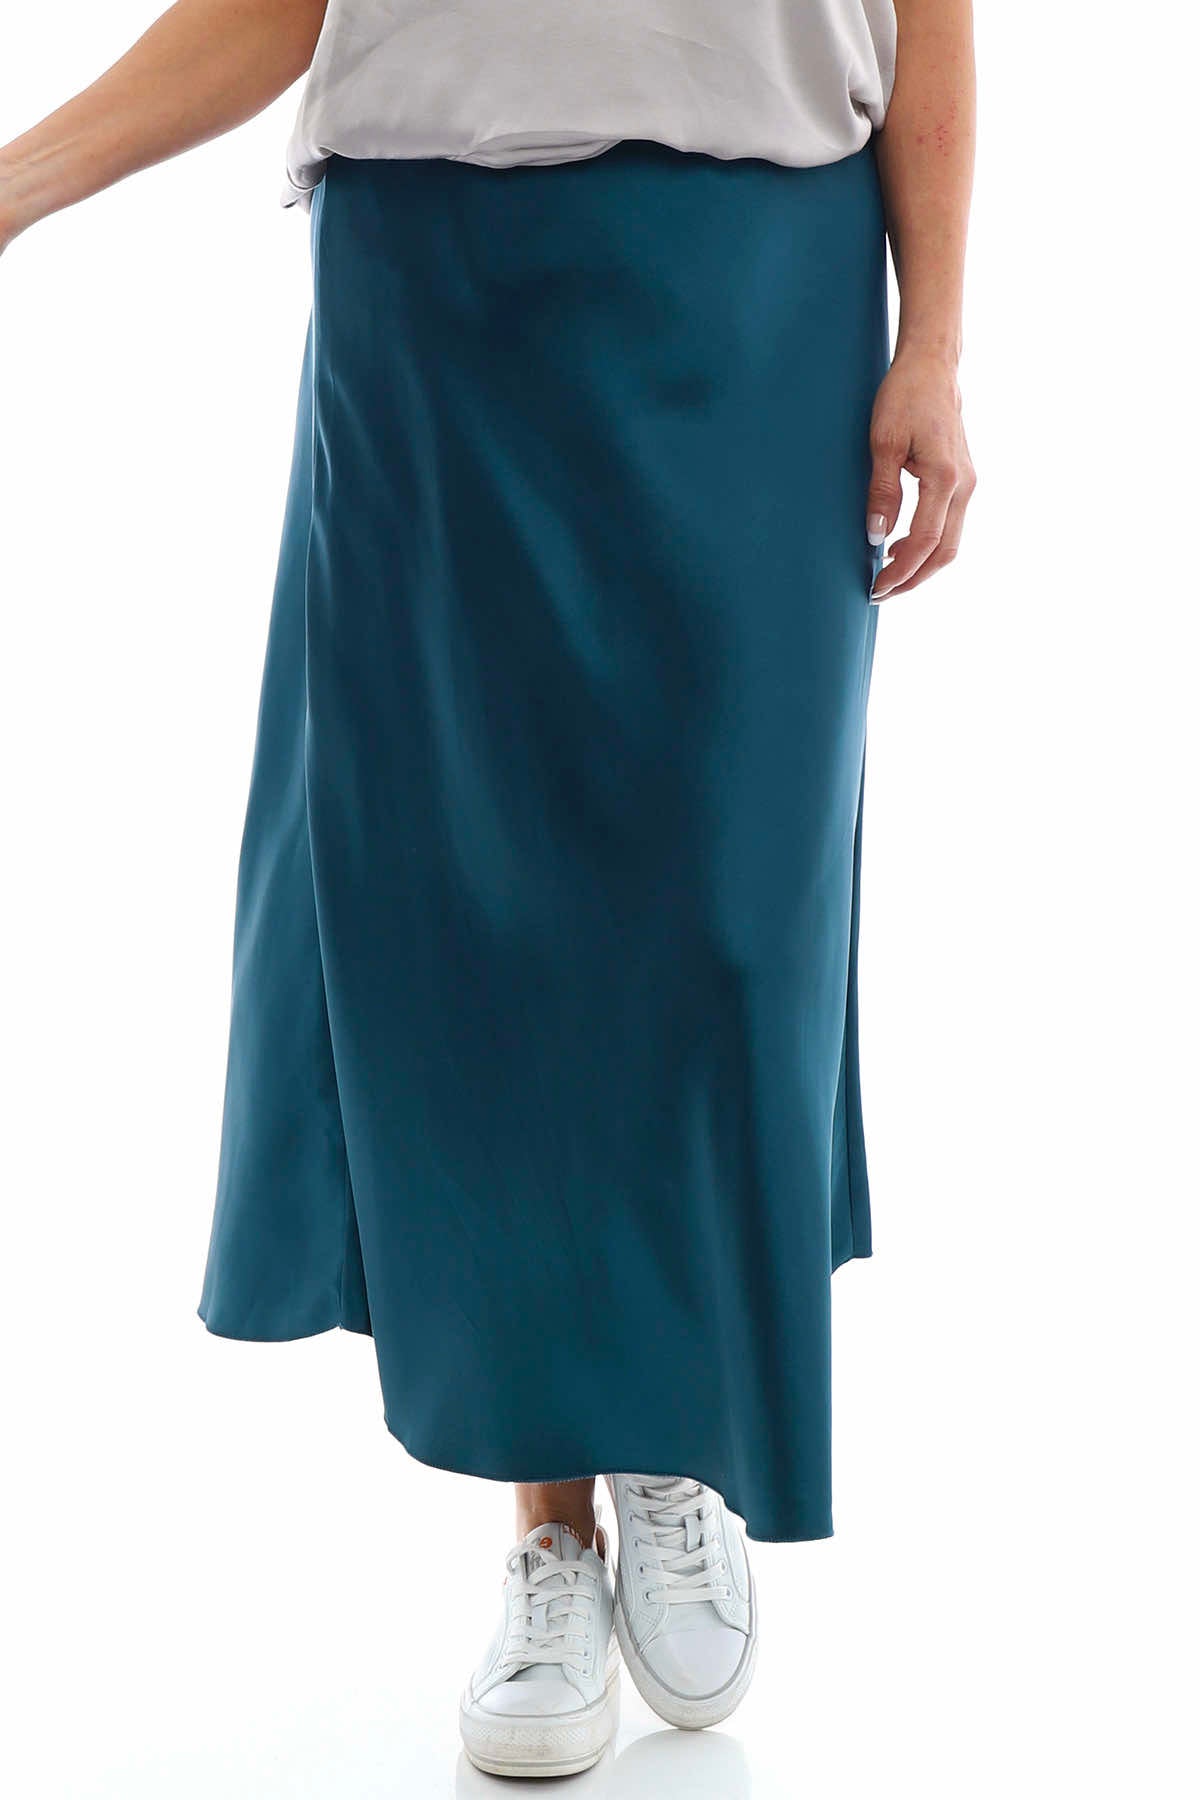 Ottilie Skirt Blue